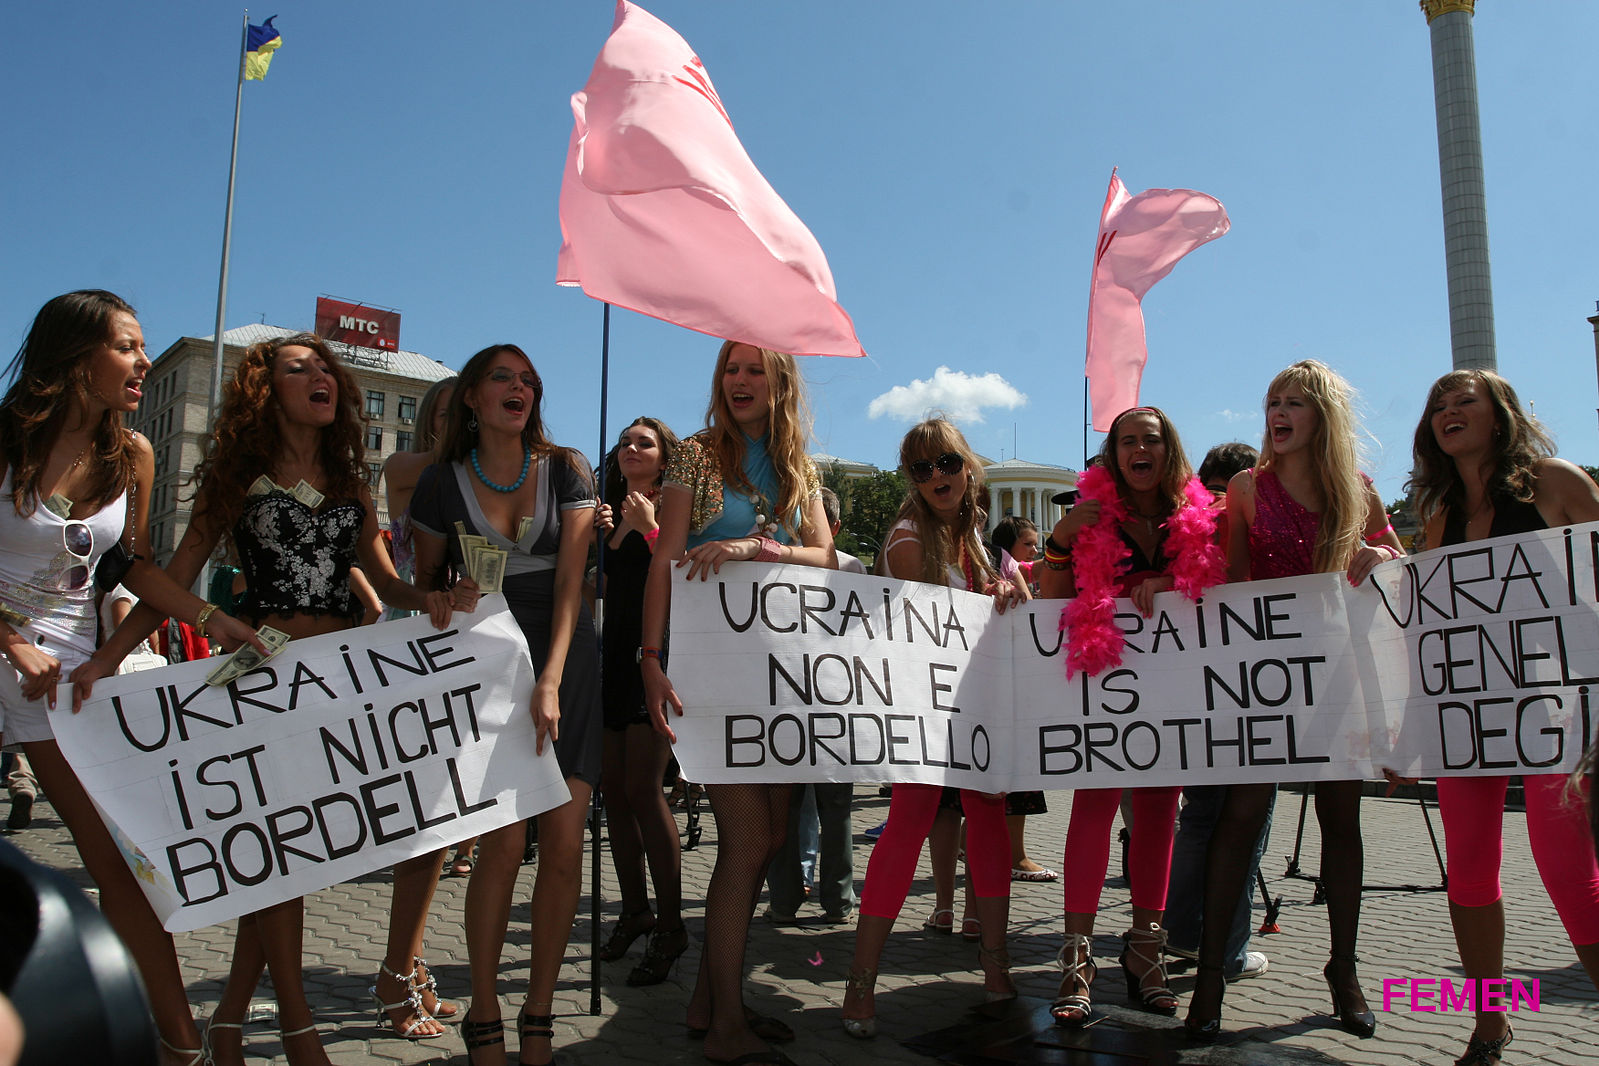 FEMEN Ukraine is not a brothel